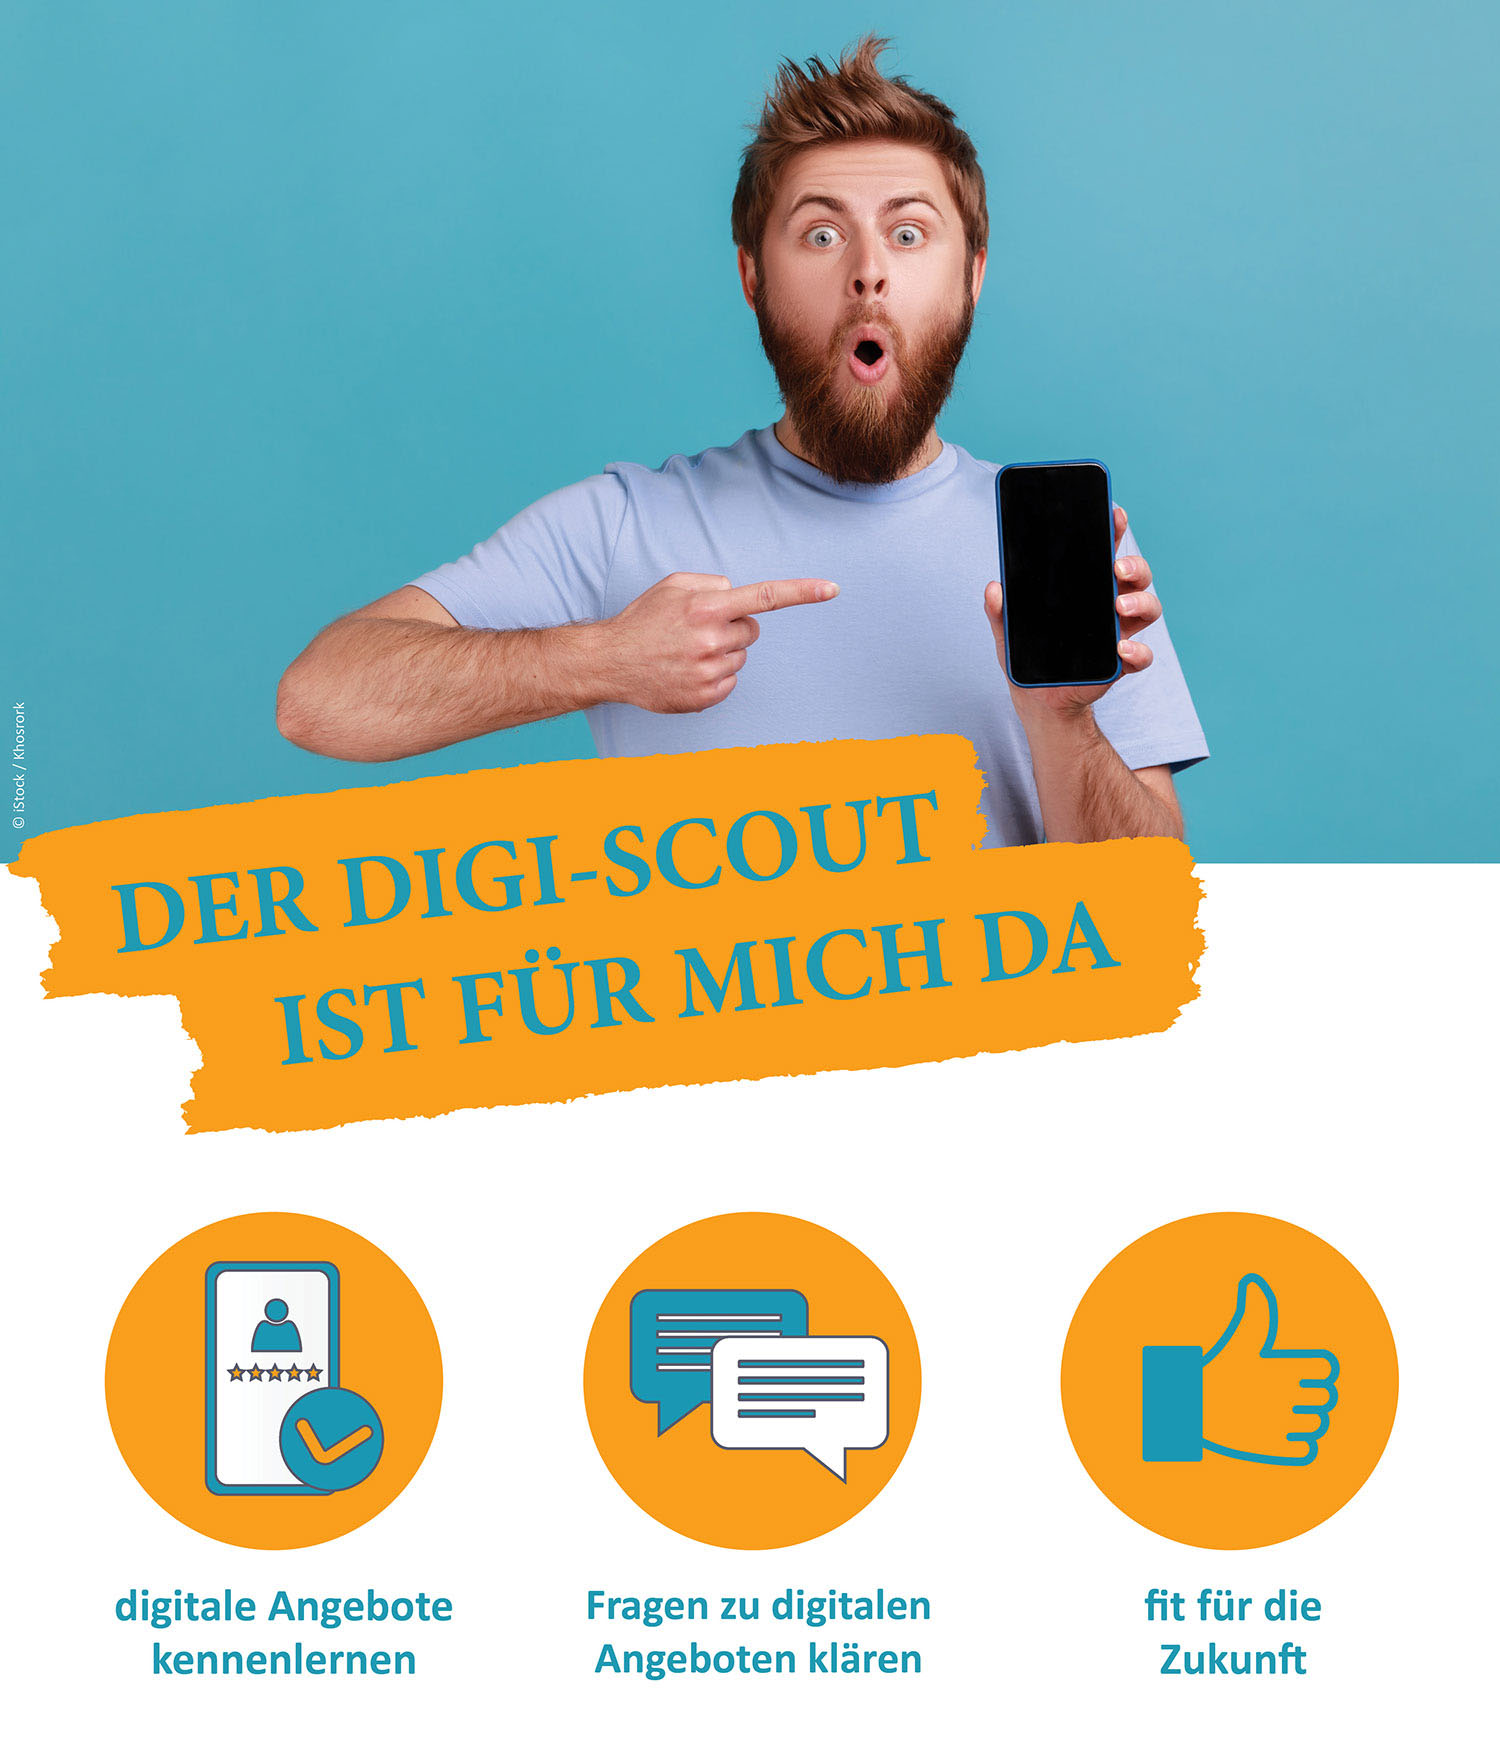 Poster des VFBB-Angebots Digi-Scout. Schriftzug Der Digi-Scout ist für mich da. Vorteile: digitale Angebote kennenlernen, Fragen zu digitalen Angeboten klären, fit für die Zukunft